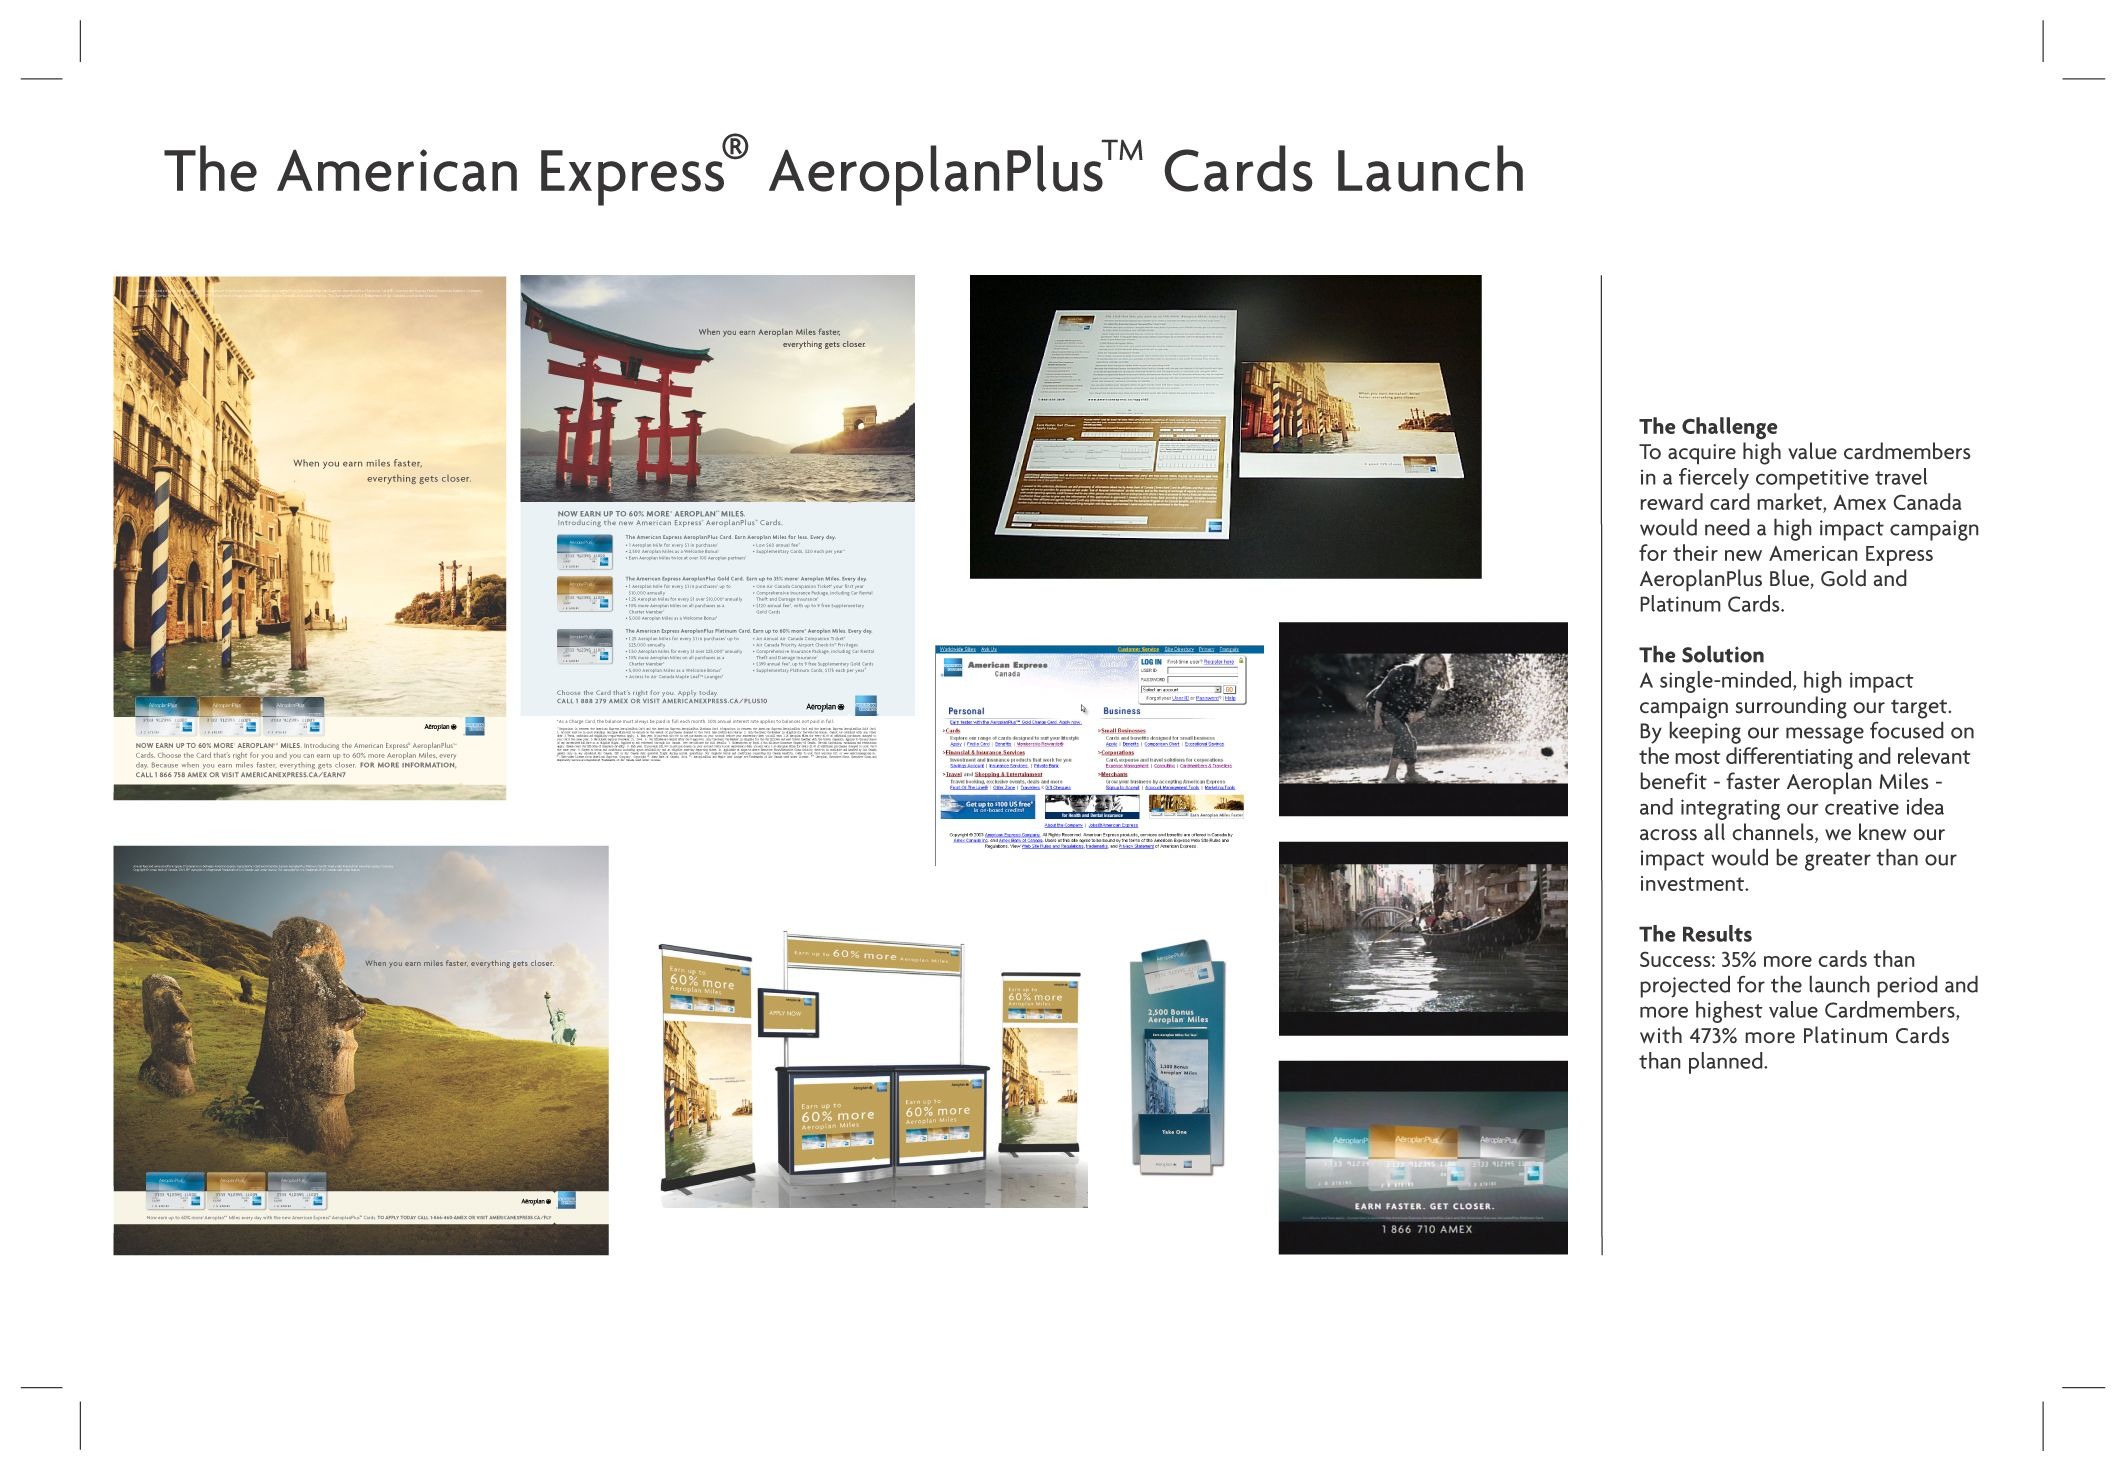 AEROPLANPLUS CARD LAUNCH